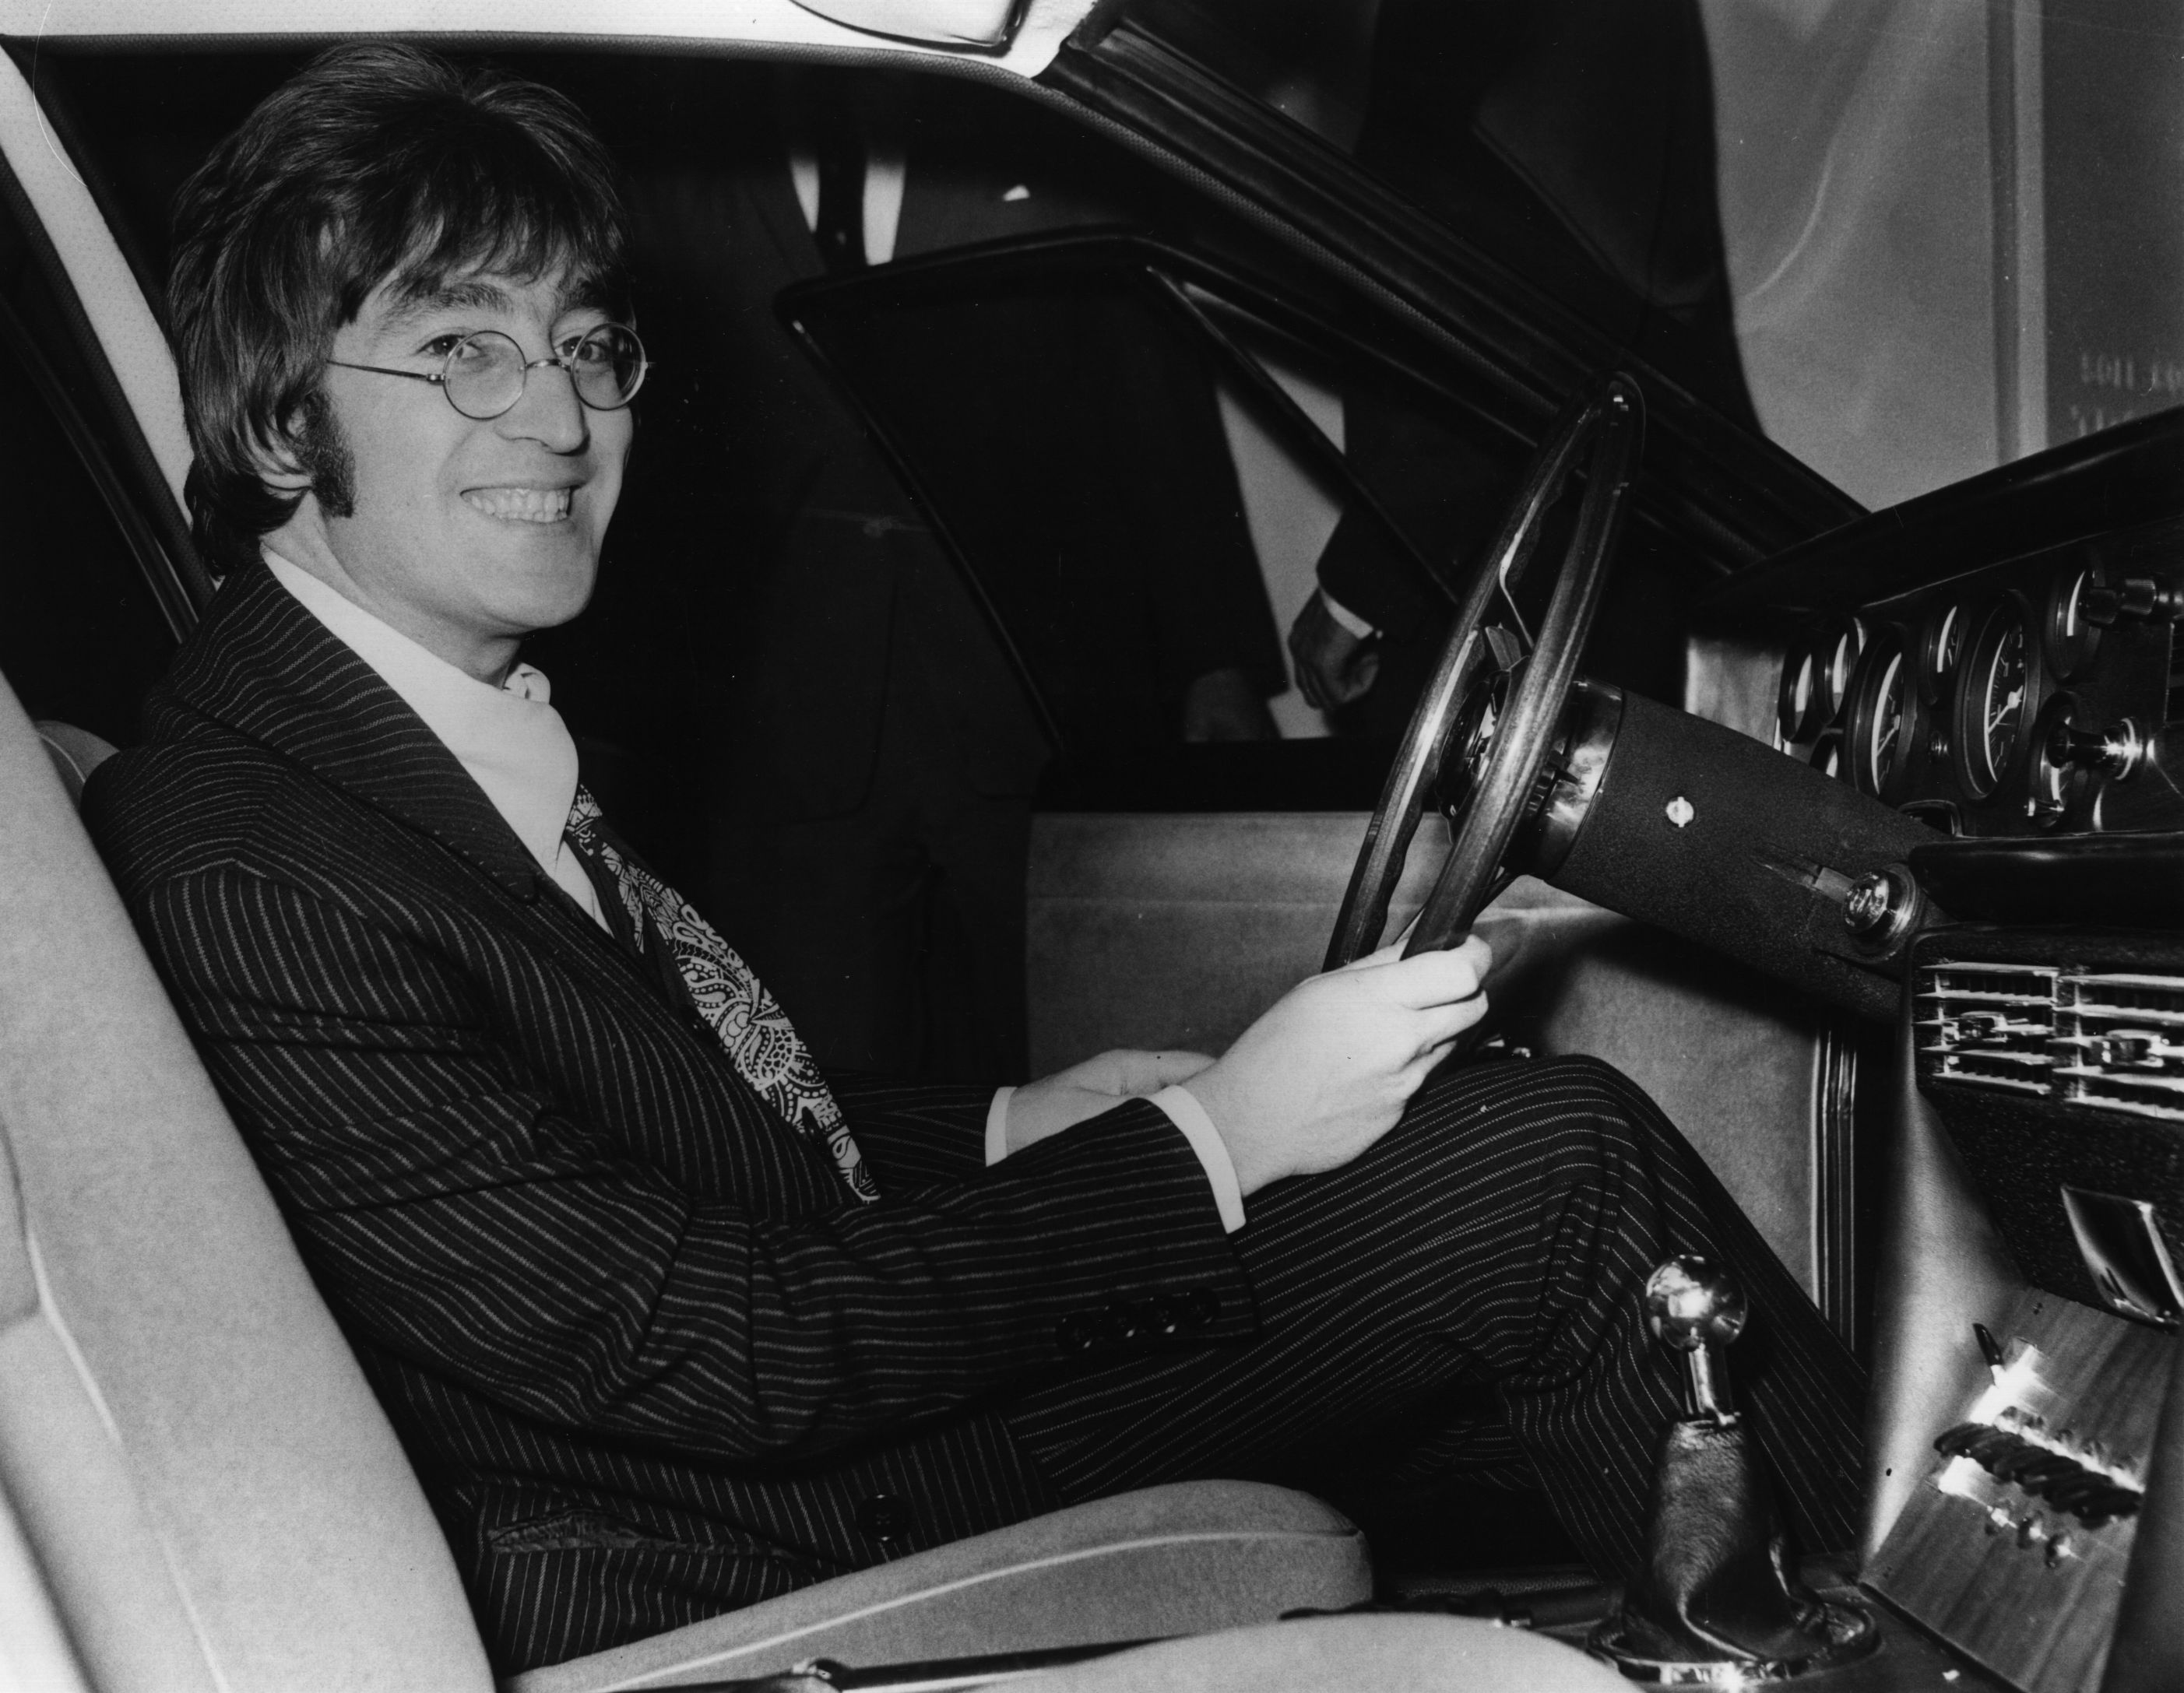 John Lennon holding a steering wheel